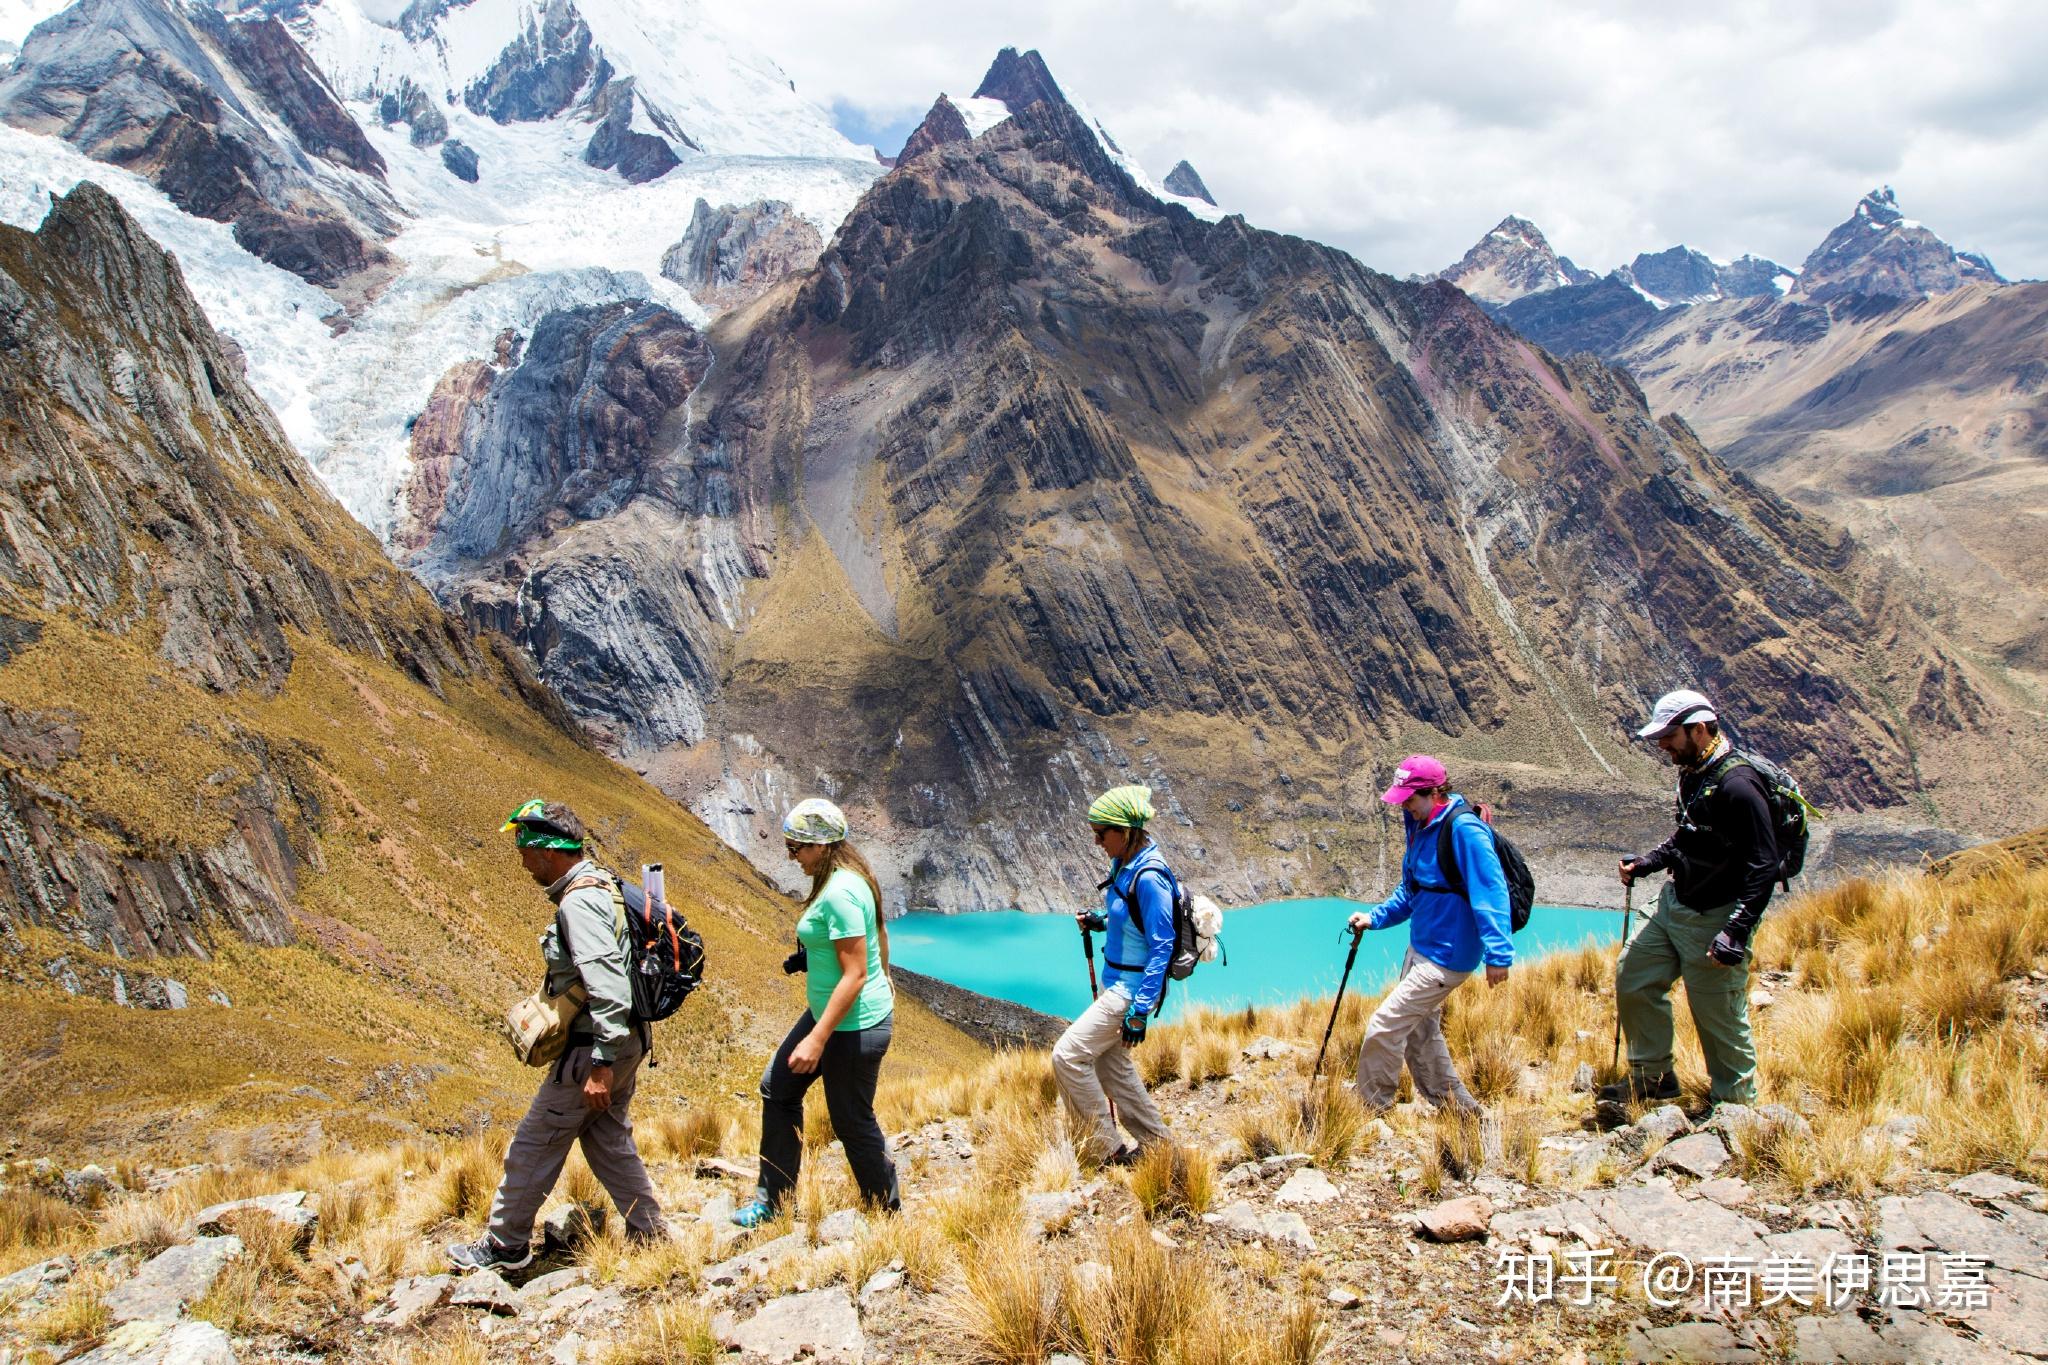 チリの美しい風景 | World Web Magazine | 世界の美しい風景